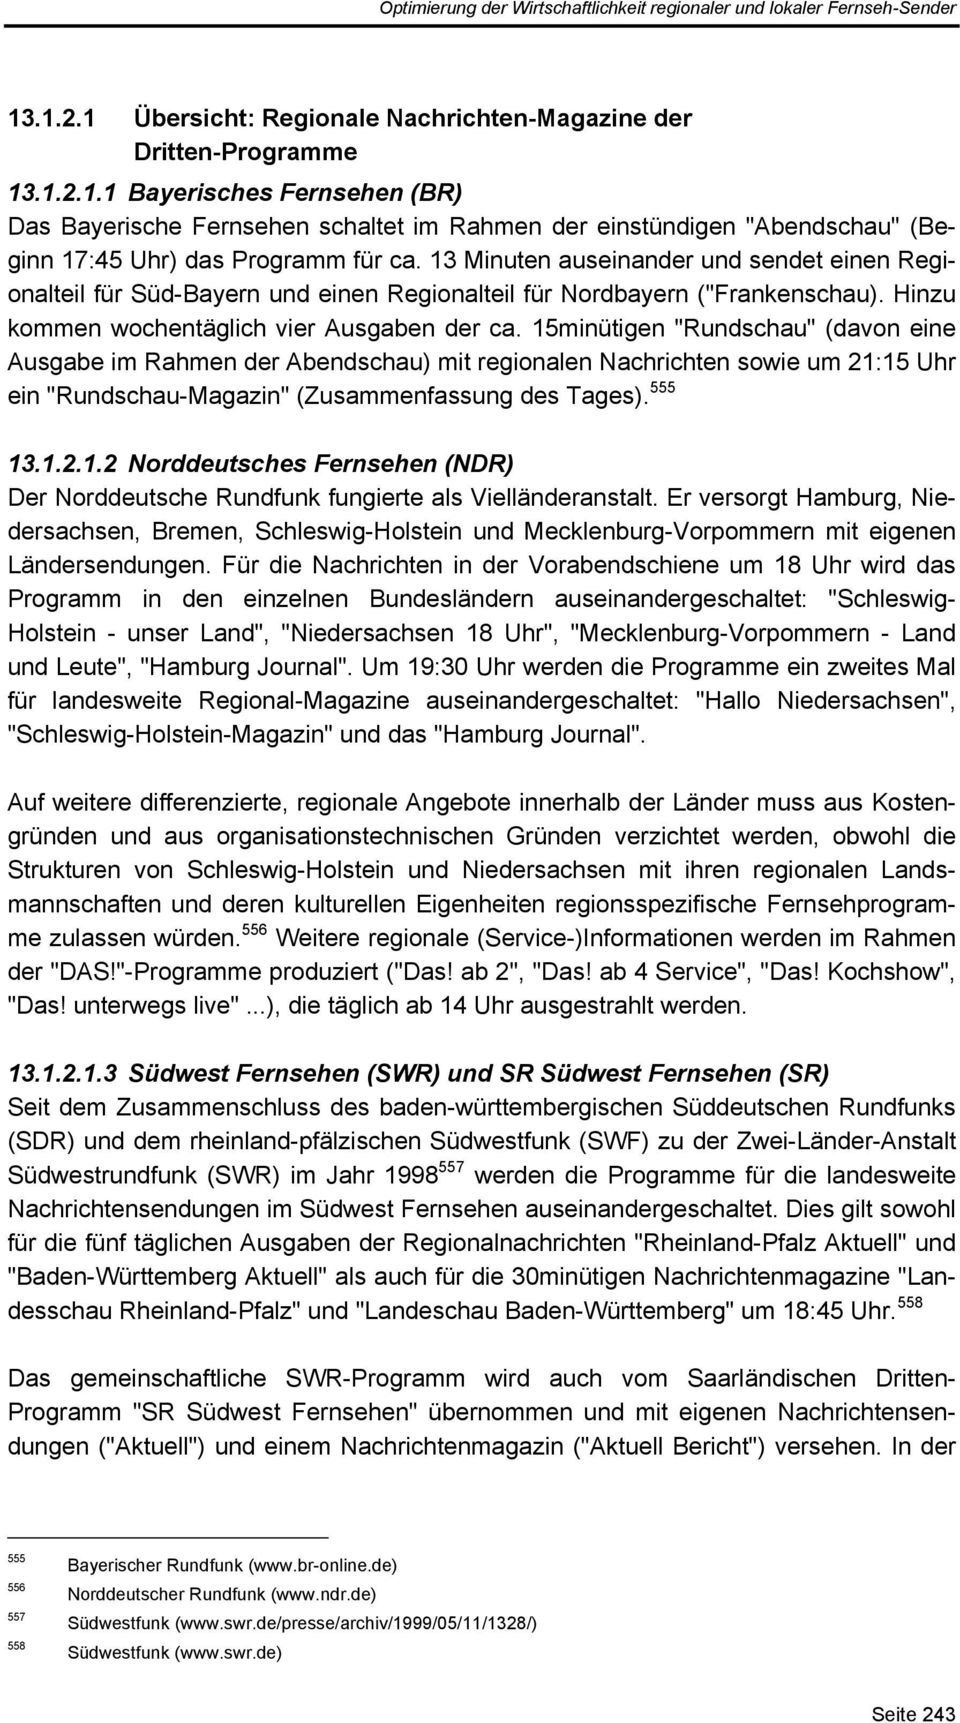 15minütigen "Rundschau" (davon eine Ausgabe im Rahmen der Abendschau) mit regionalen Nachrichten sowie um 21:15 Uhr ein "Rundschau-Magazin" (Zusammenfassung des Tages). 555 13.1.2.1.2 Norddeutsches Fernsehen (NDR) Der Norddeutsche Rundfunk fungierte als Vielländeranstalt.